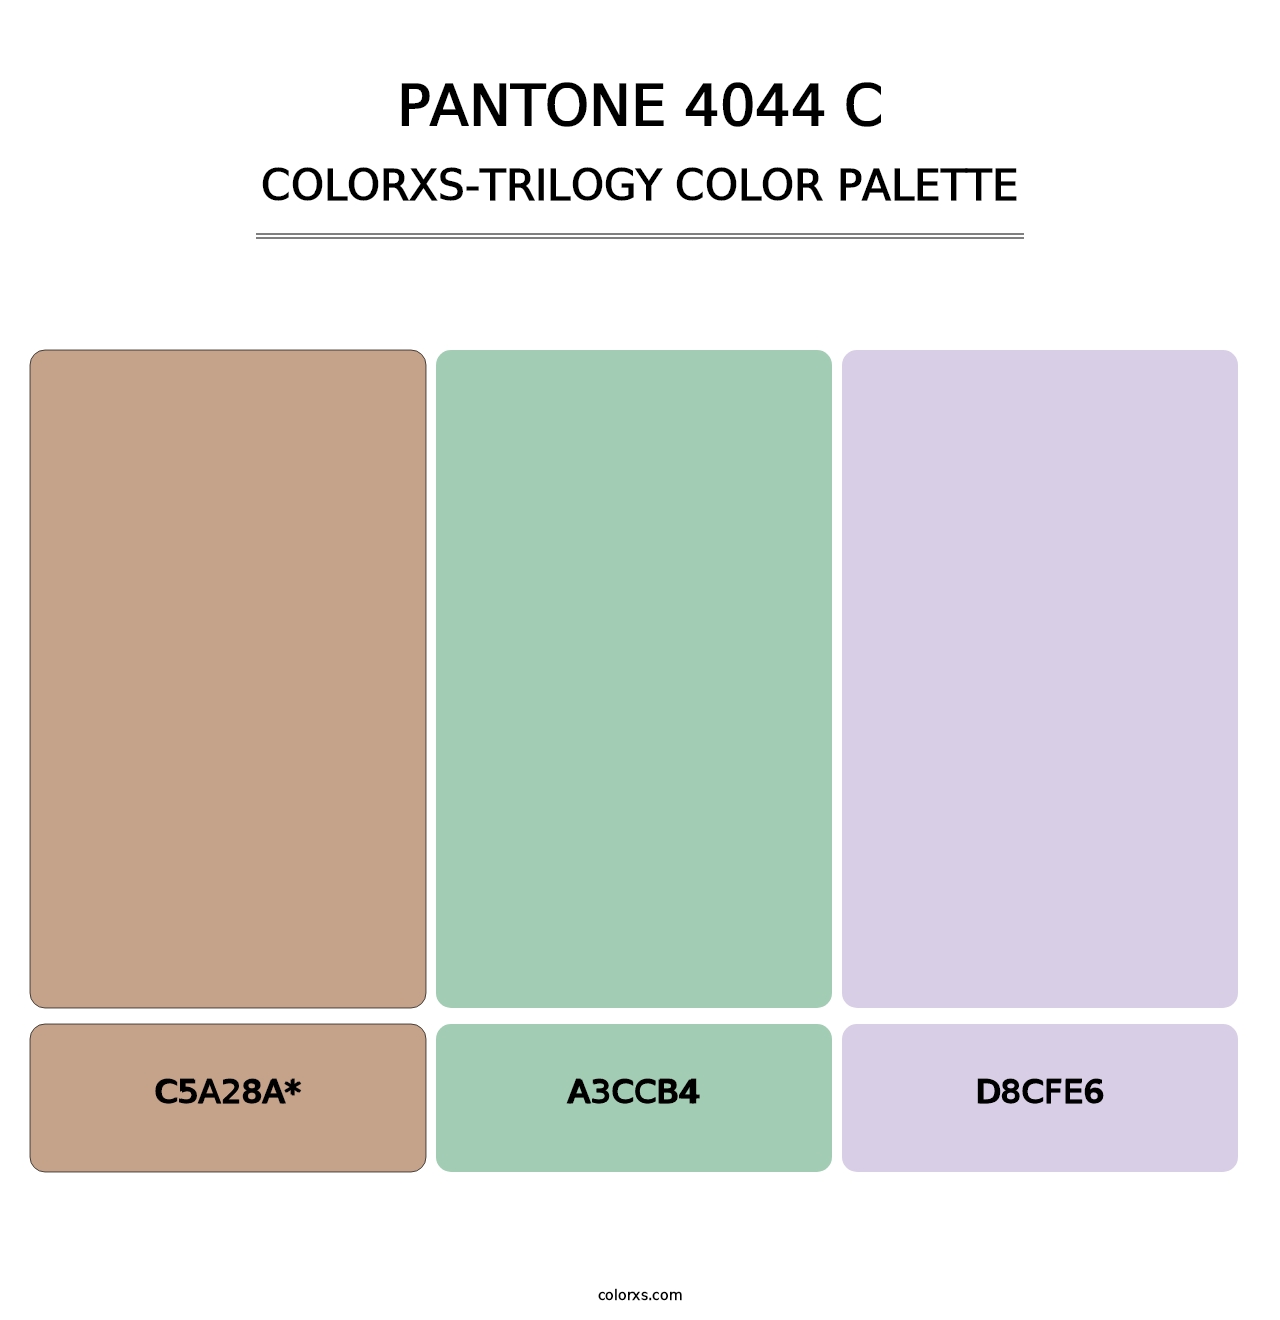 PANTONE 4044 C - Colorxs Trilogy Palette